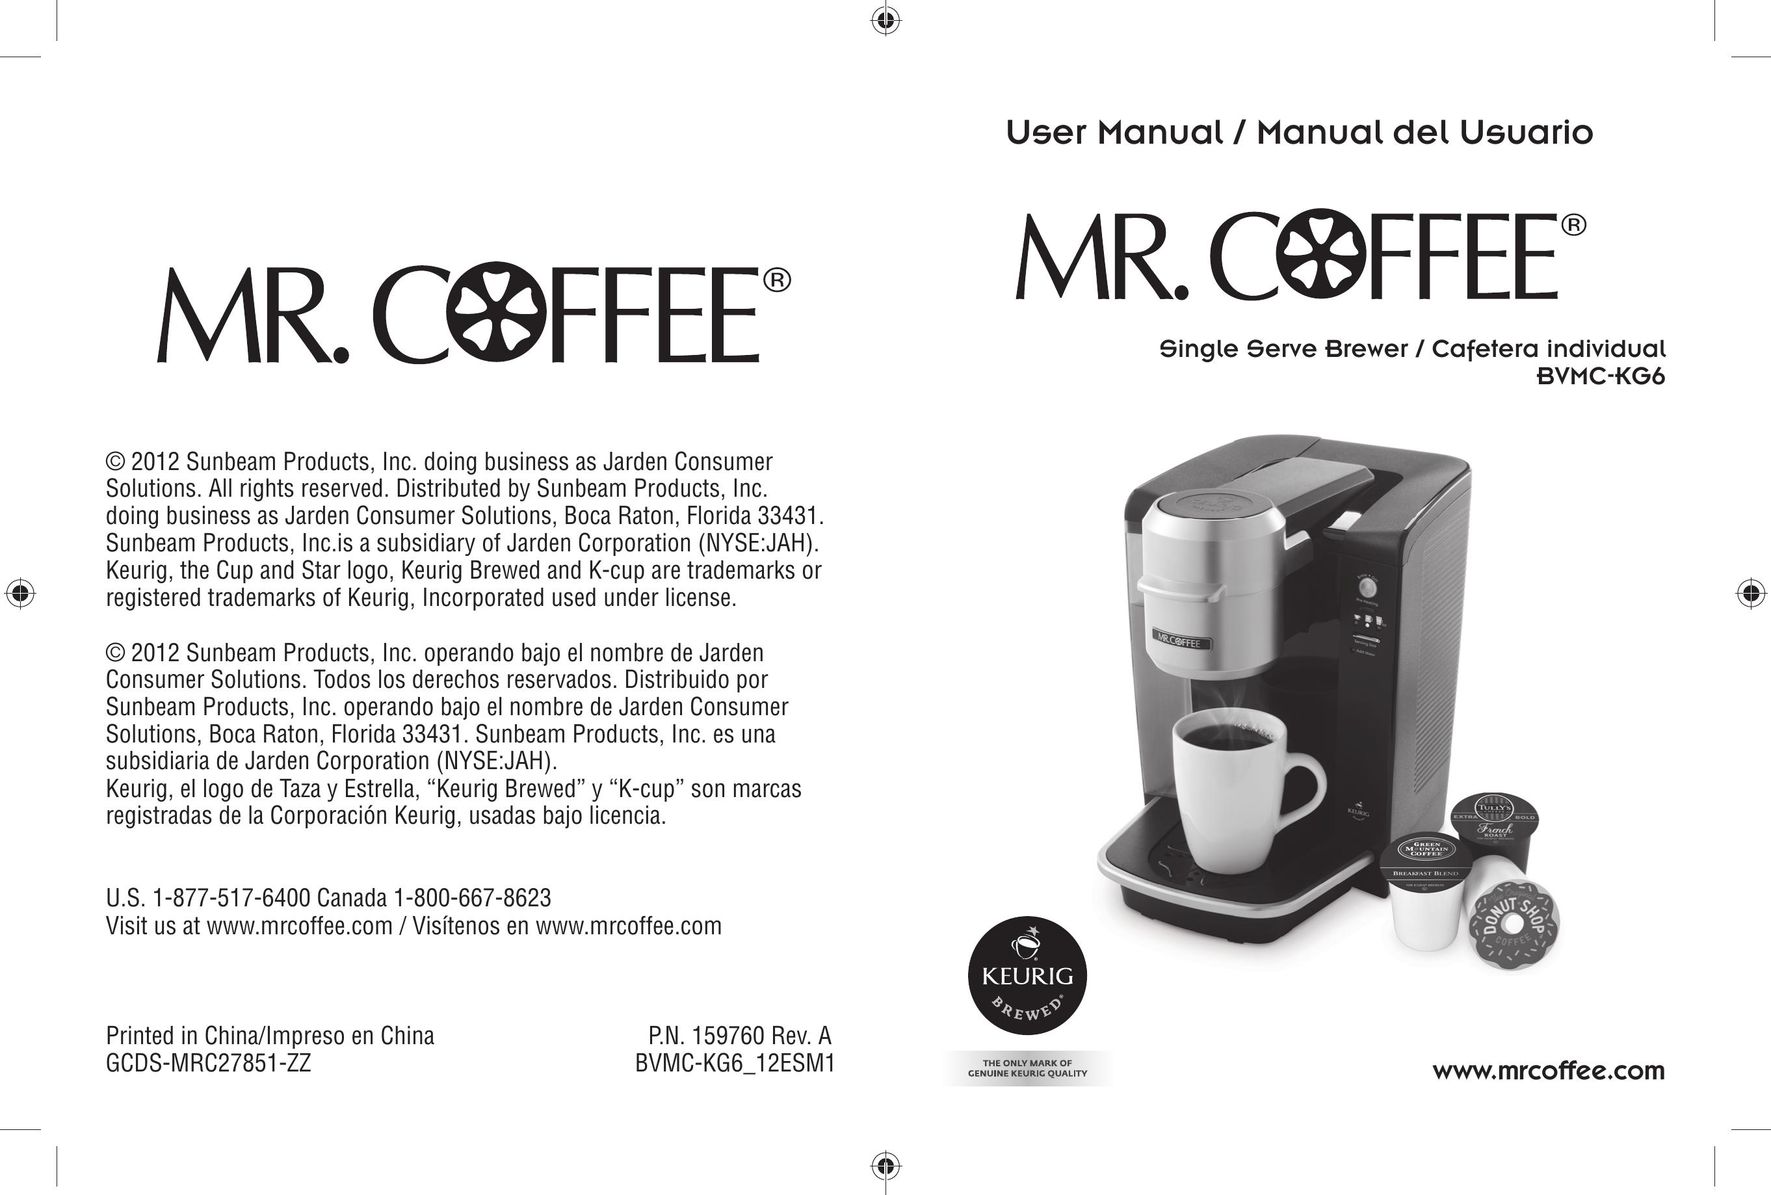 Keurig BVMC-KG6 Coffeemaker User Manual